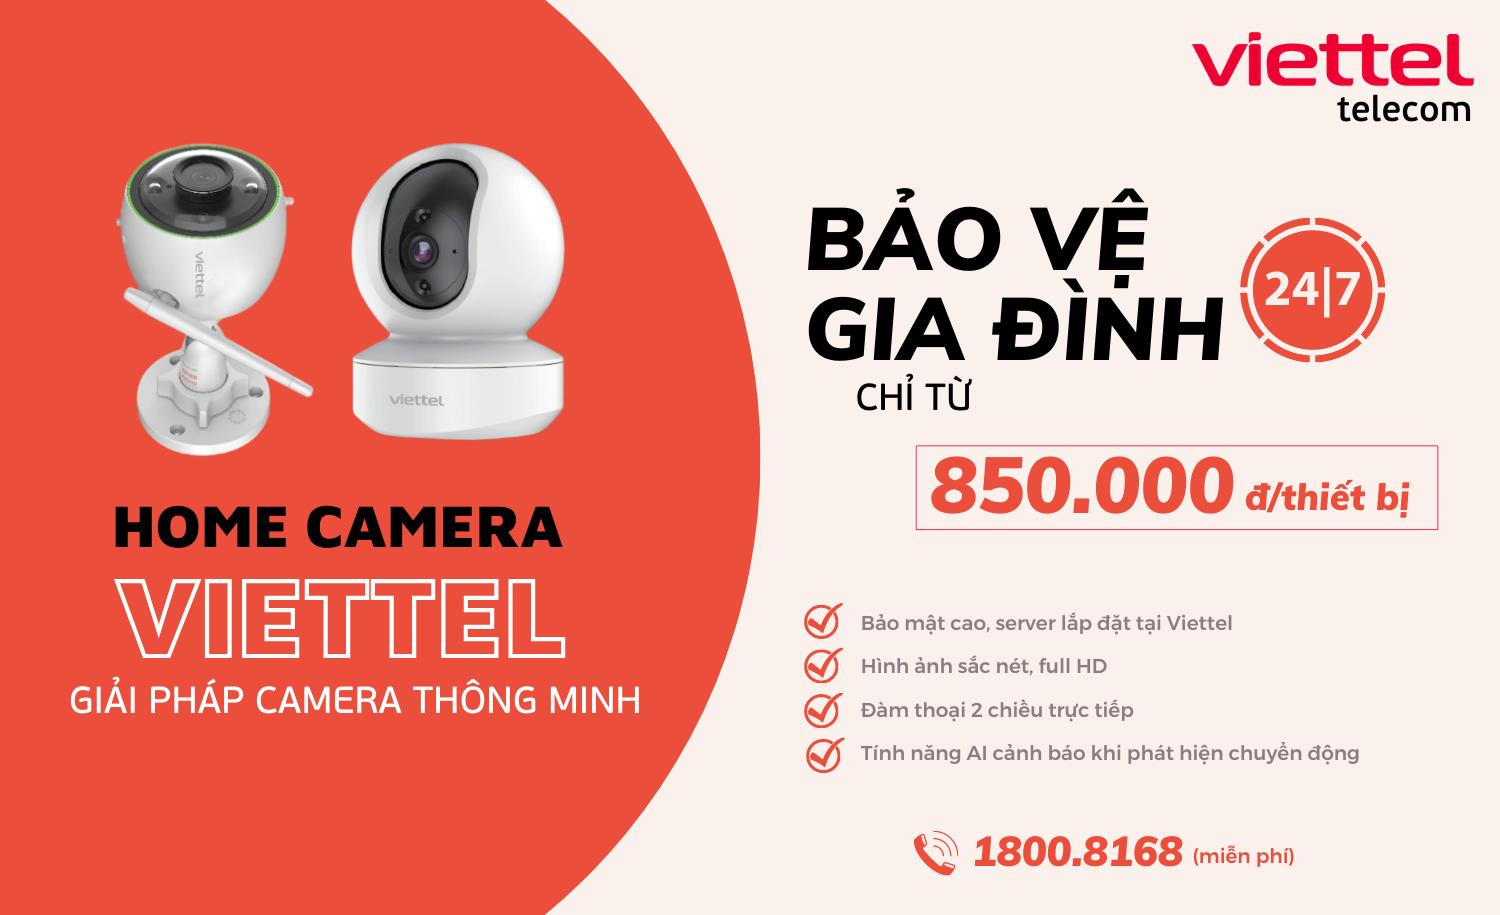 Home Camera Viettel - Bảo vệ gia đình 24/7